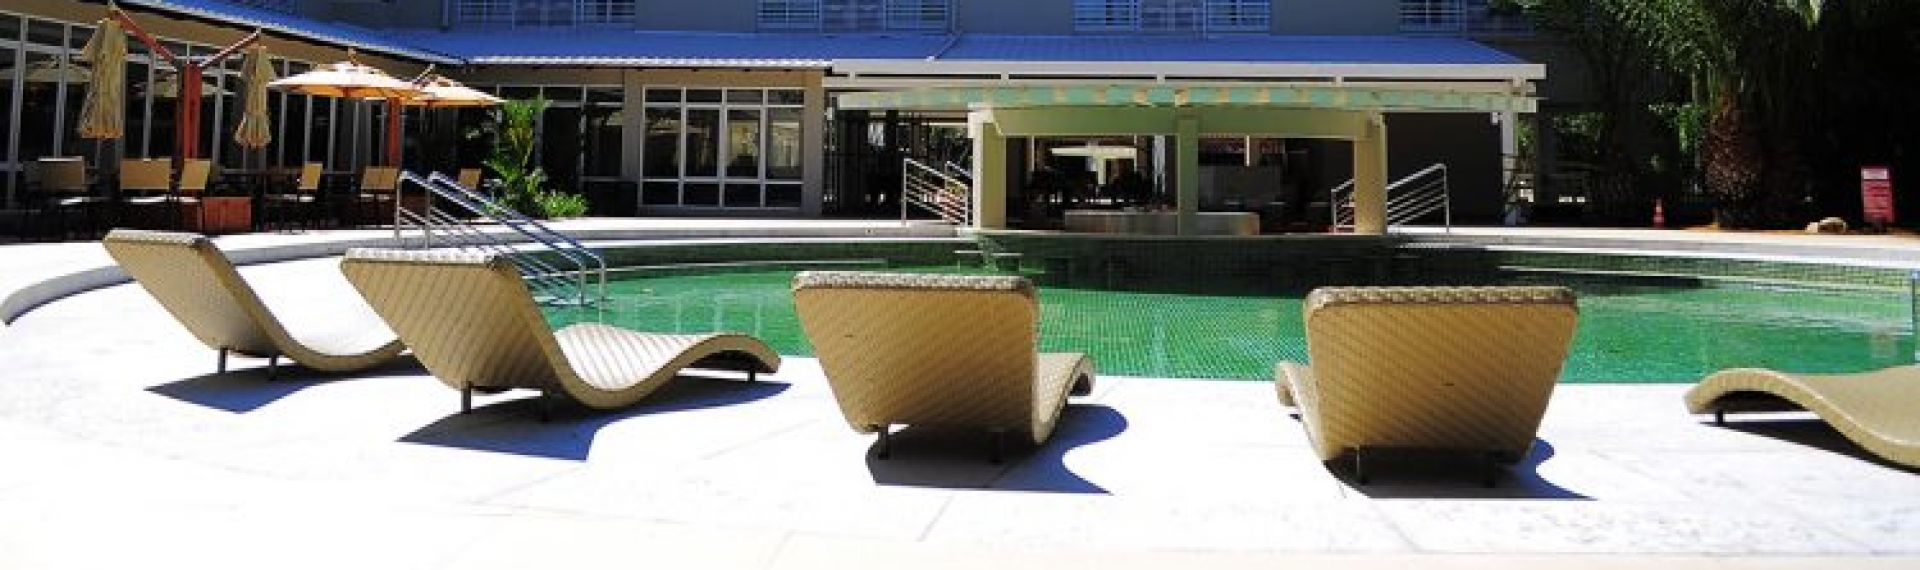 Hotéis próximos ao Hot Park: Veja as melhores opções em Rio Quente